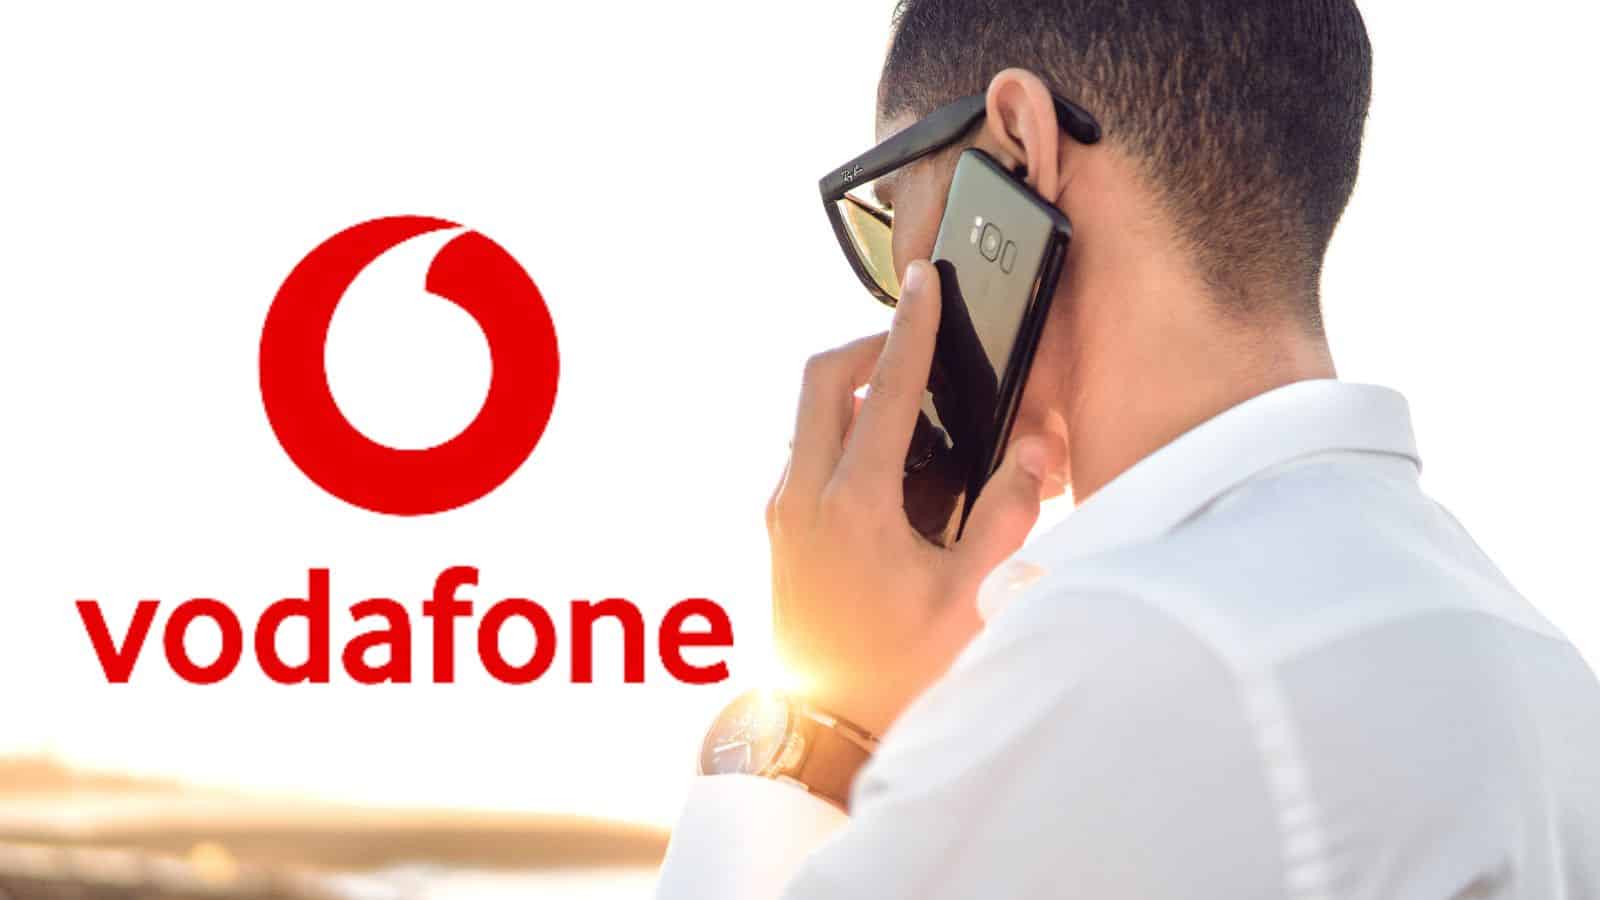 Vodafone offre 200 GIGA con 5 euro al mese: promo imperdibile 